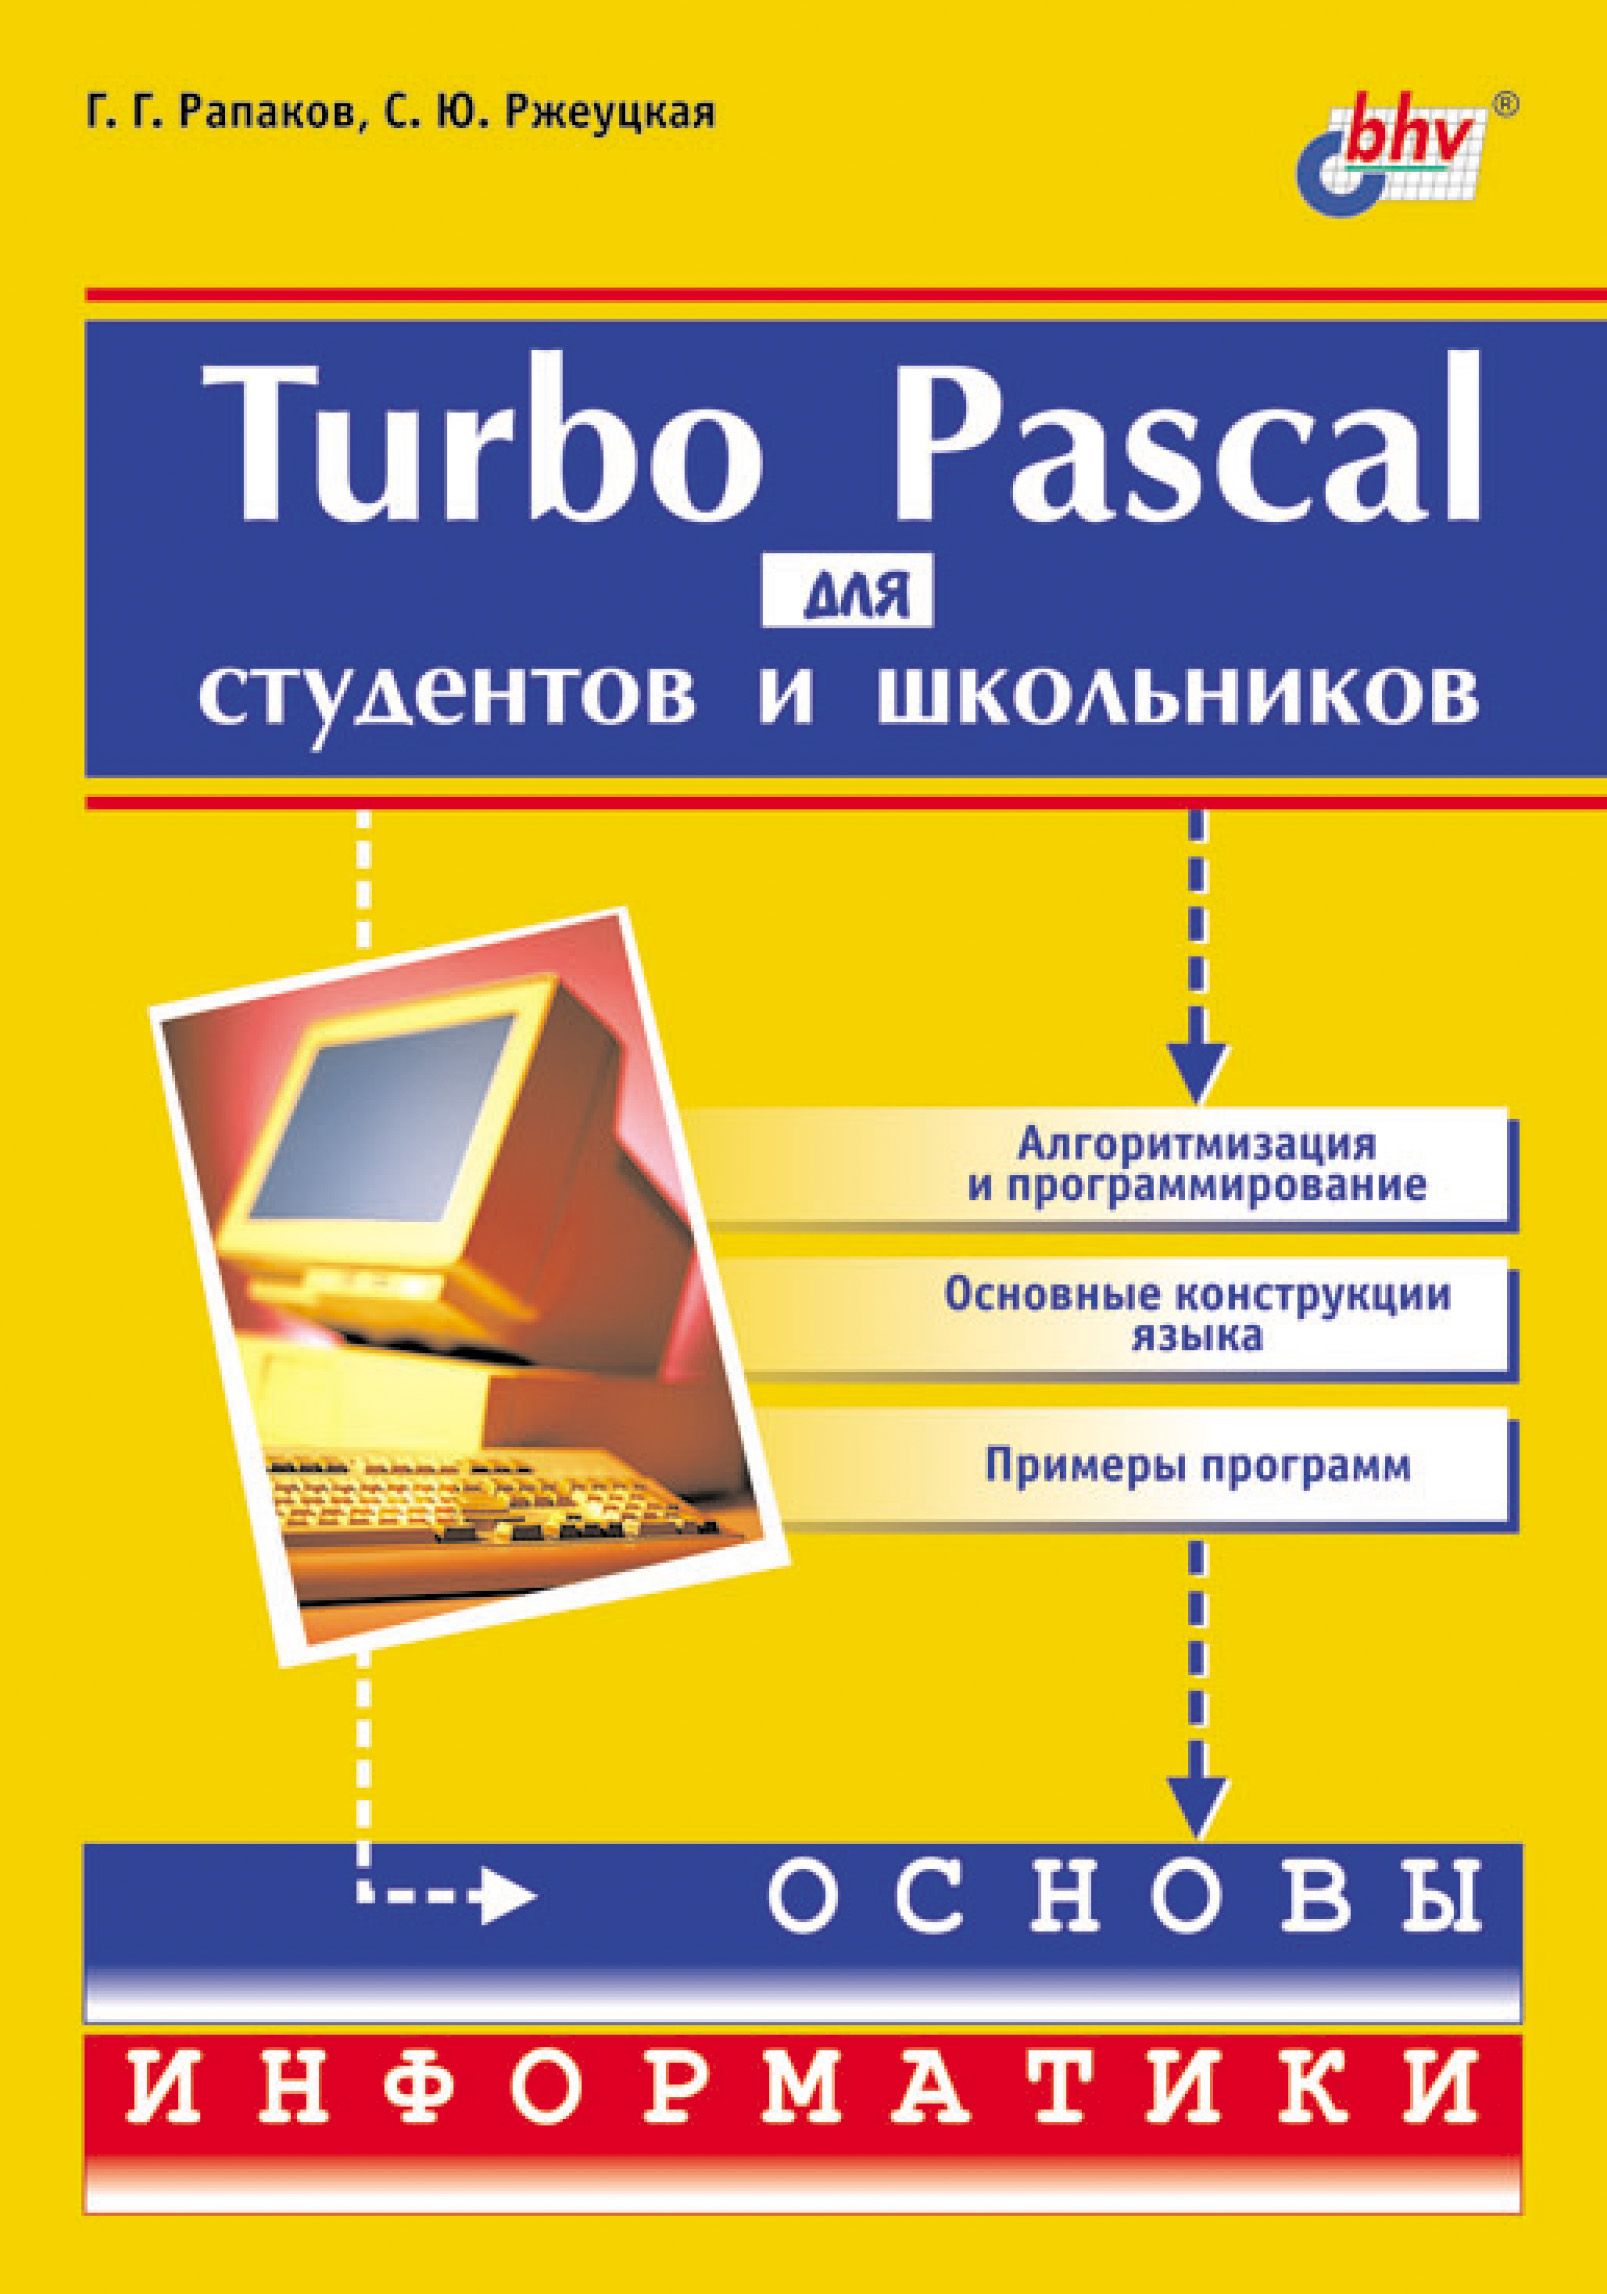 Turbo Pascalдля студентов и школьников